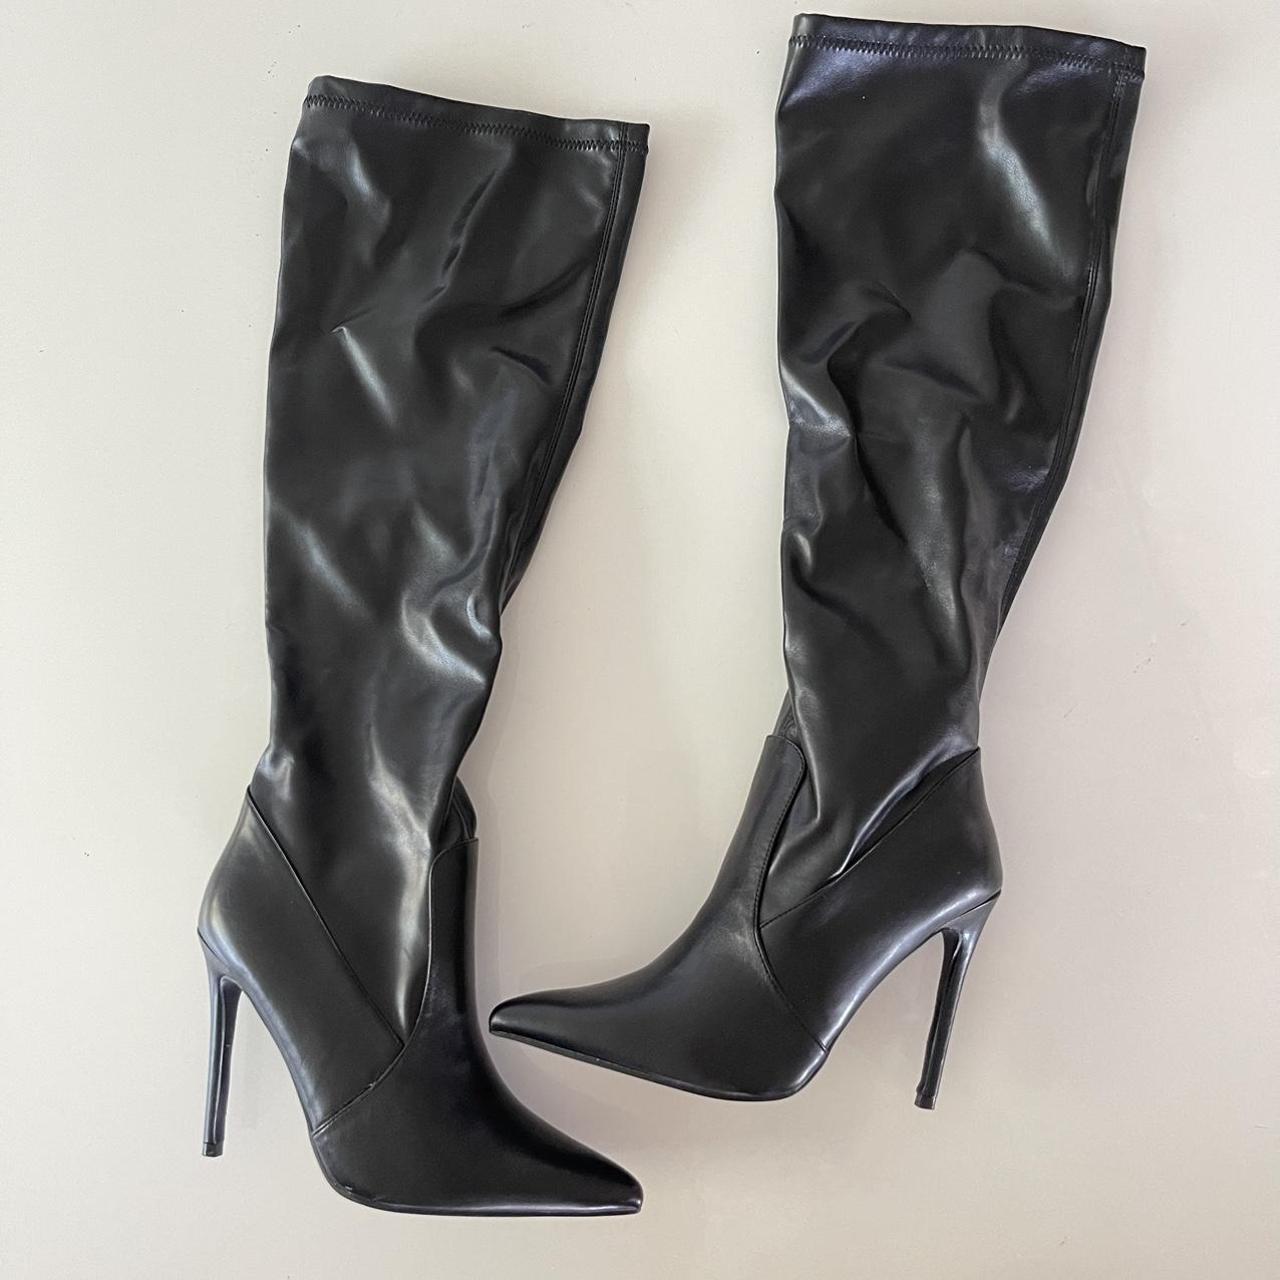 PrettyLittleThing Women's Black Boots | Depop